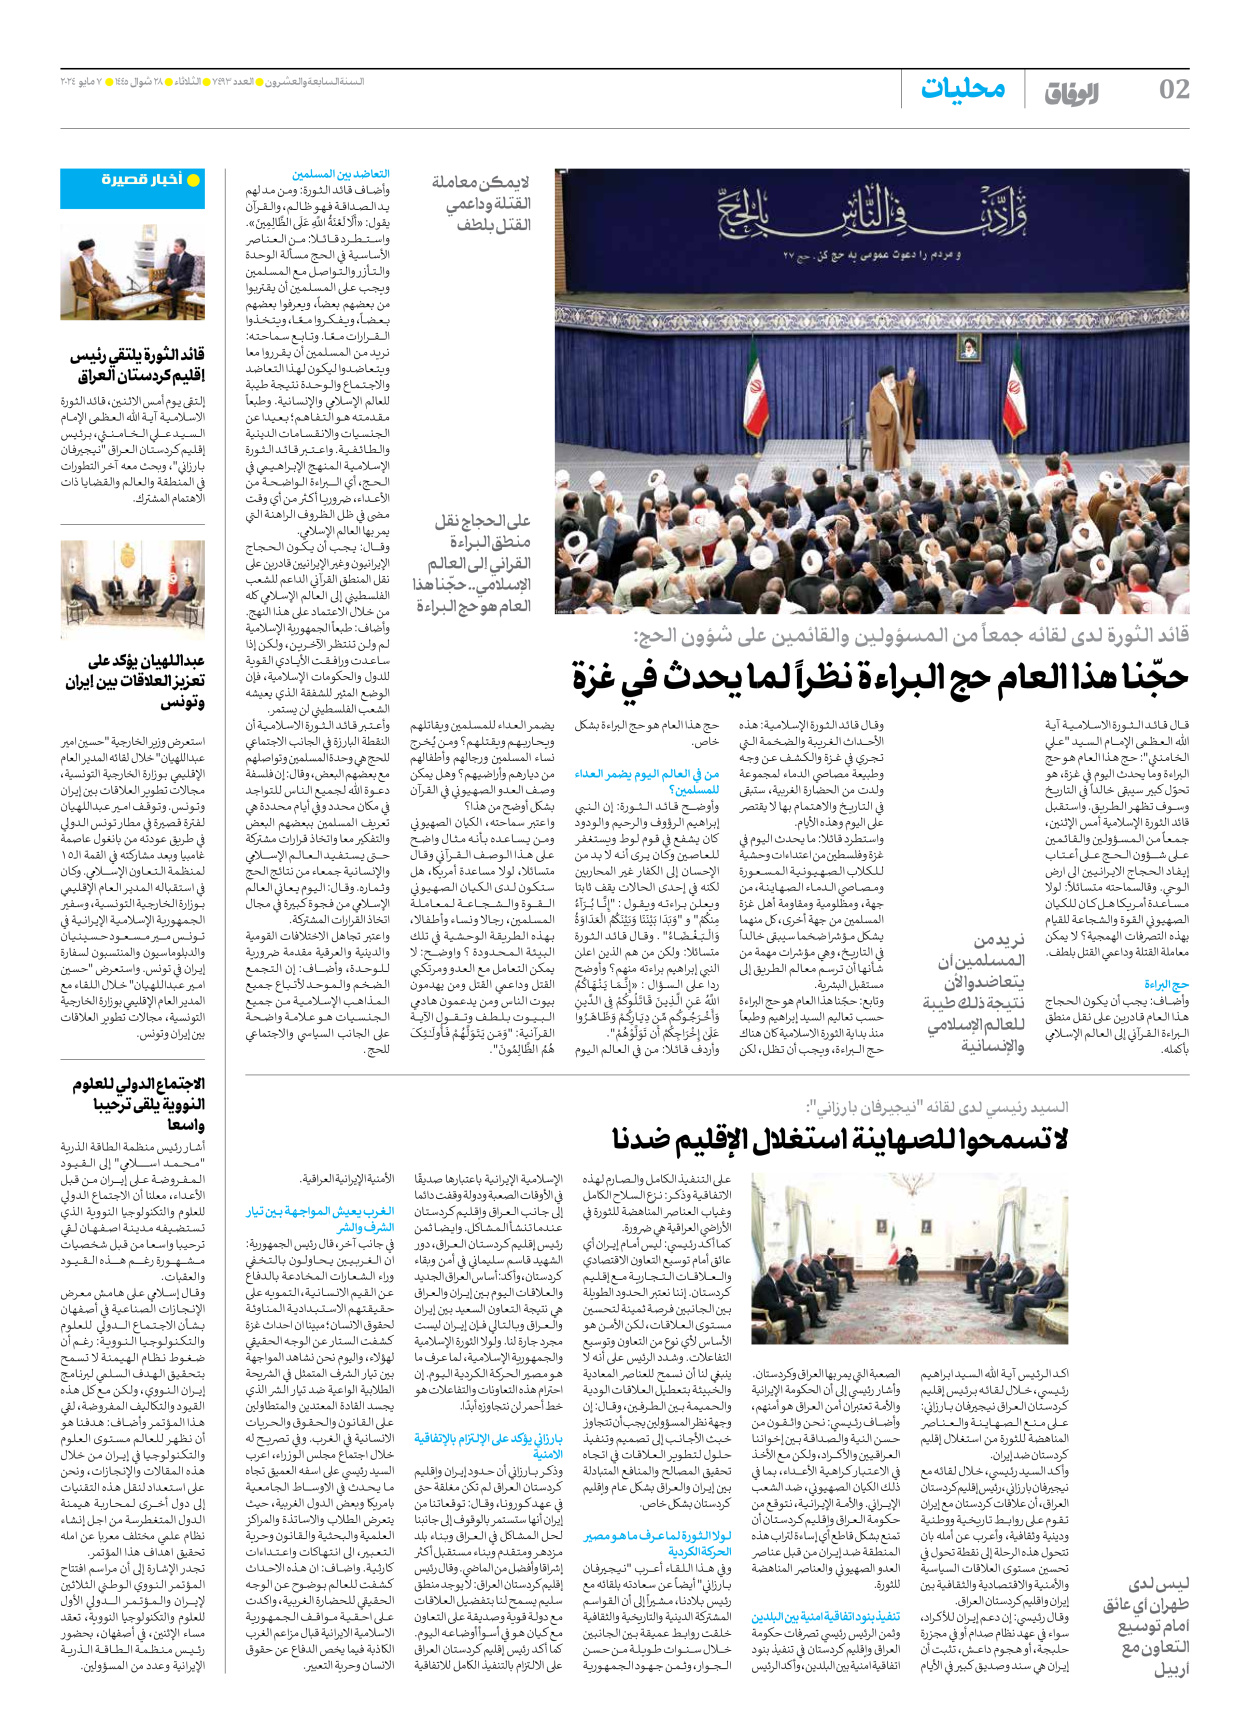 صحیفة ایران الدولیة الوفاق - العدد سبعة آلاف وأربعمائة وثلاثة وتسعون - ٠٧ مايو ٢٠٢٤ - الصفحة ۲